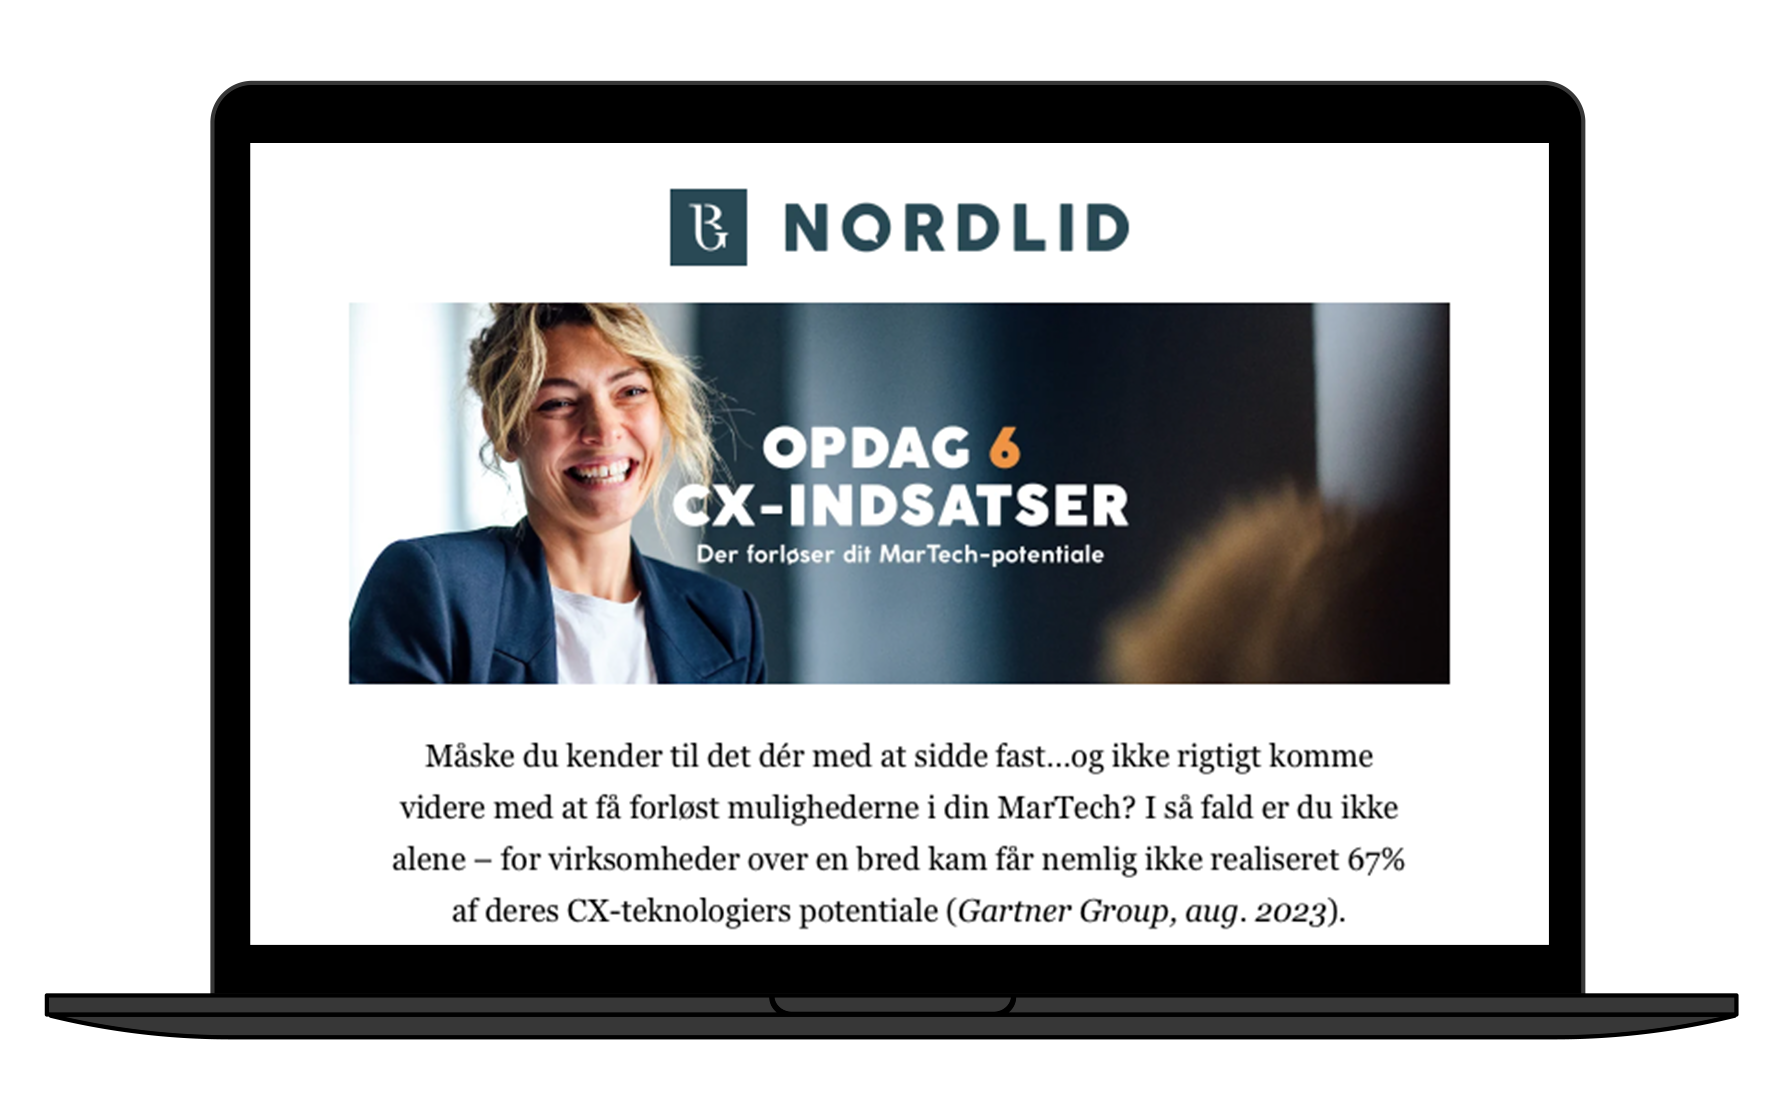 NordlidMockup_Email